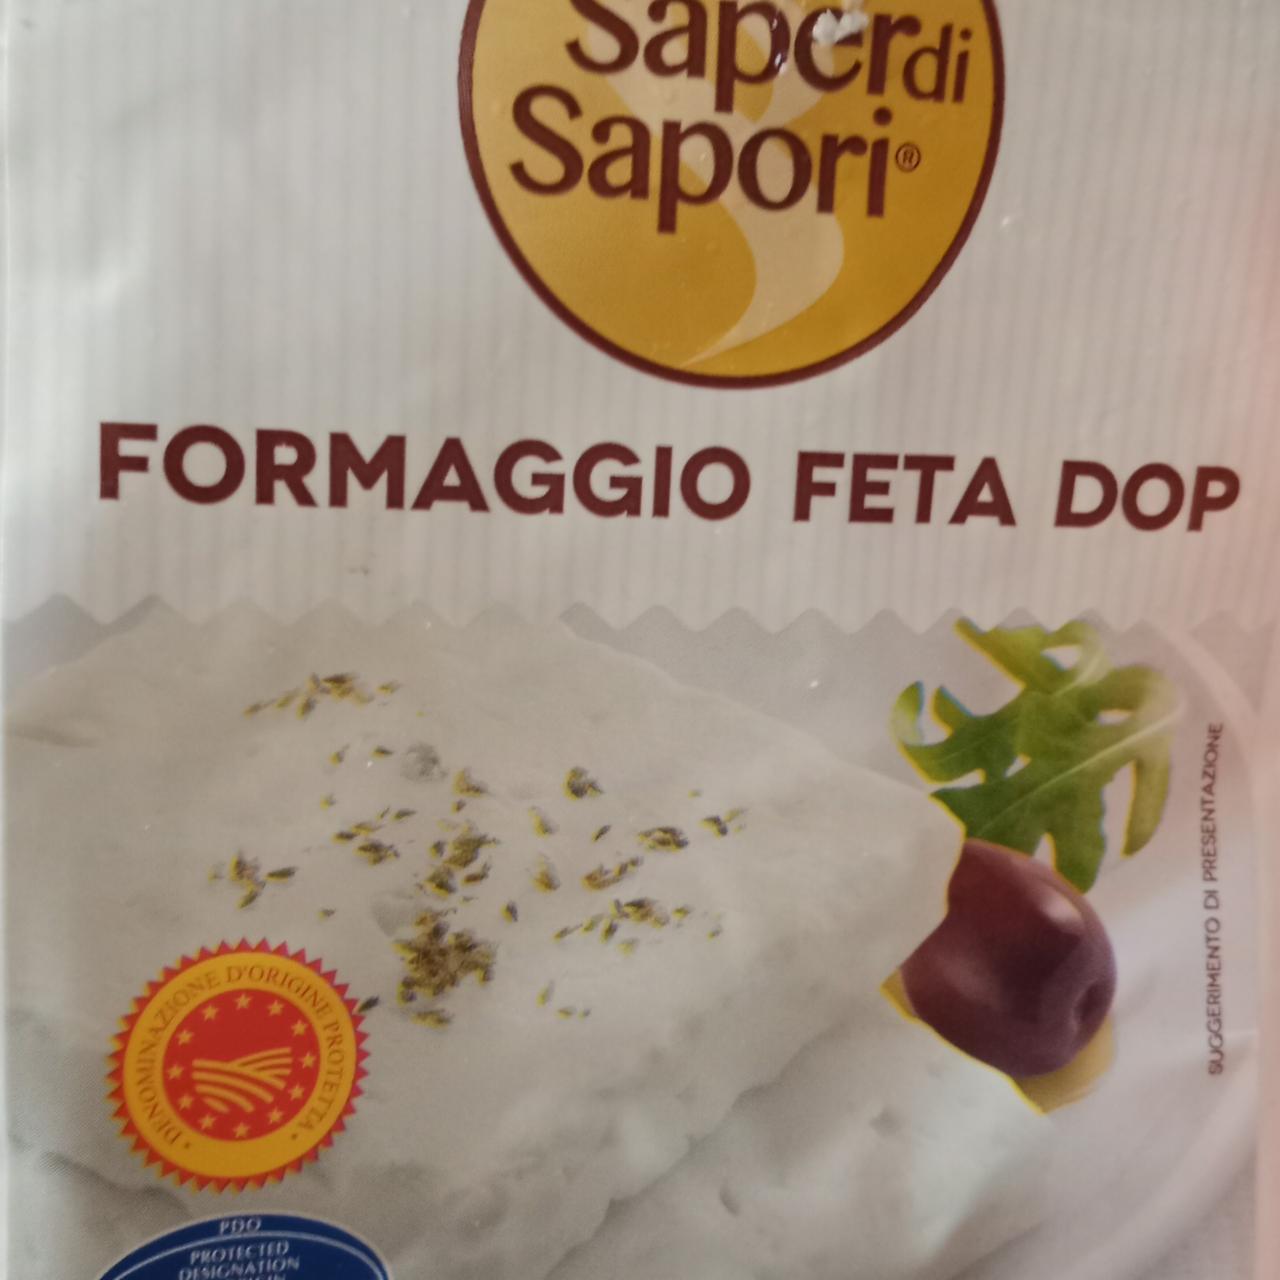 Фото - Formaggio feta dop Sapor di Sapori